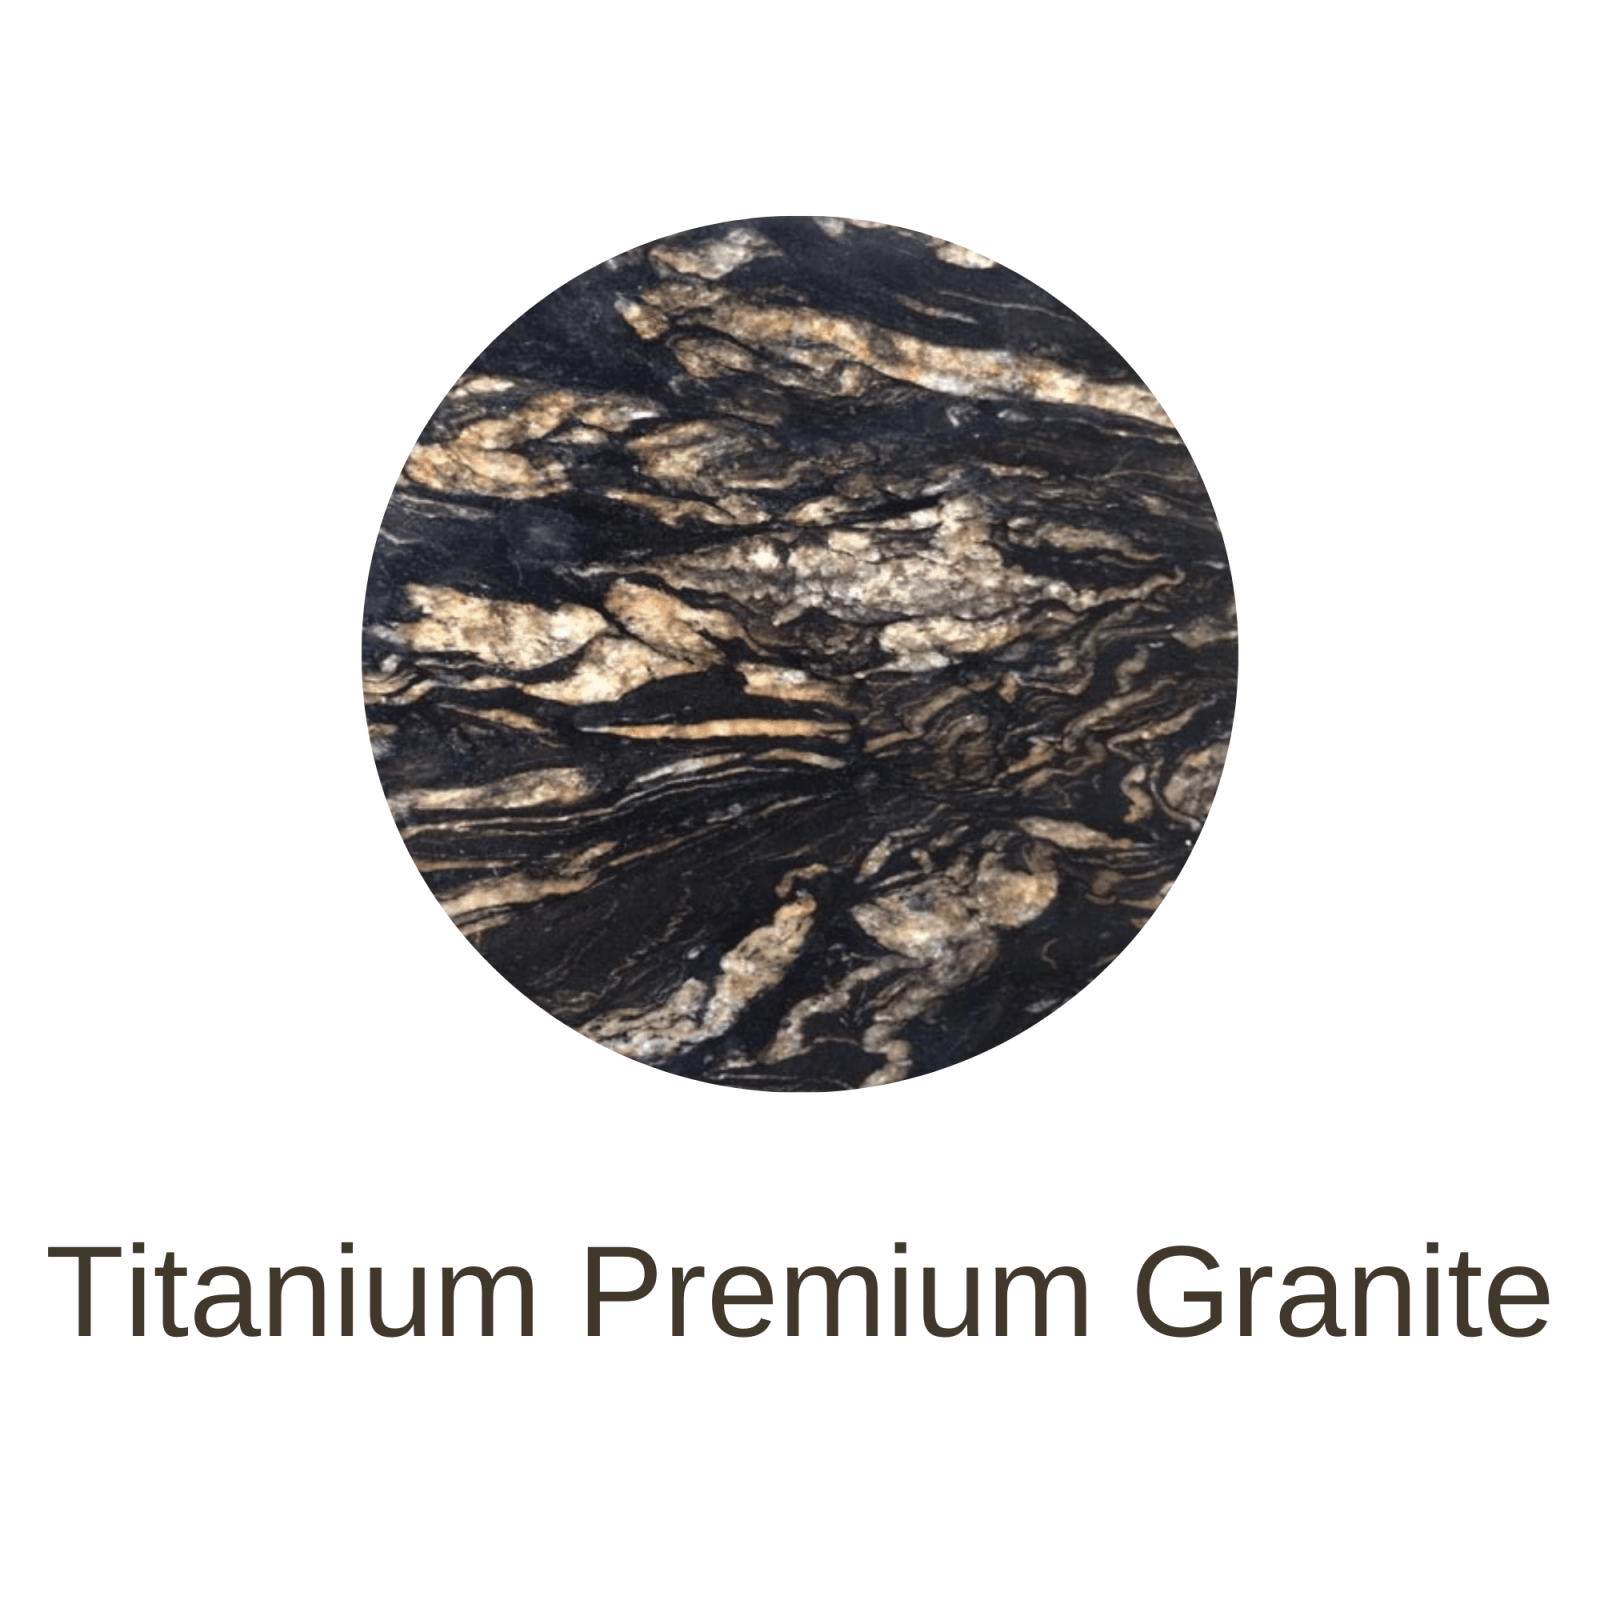 TitaniumPremium